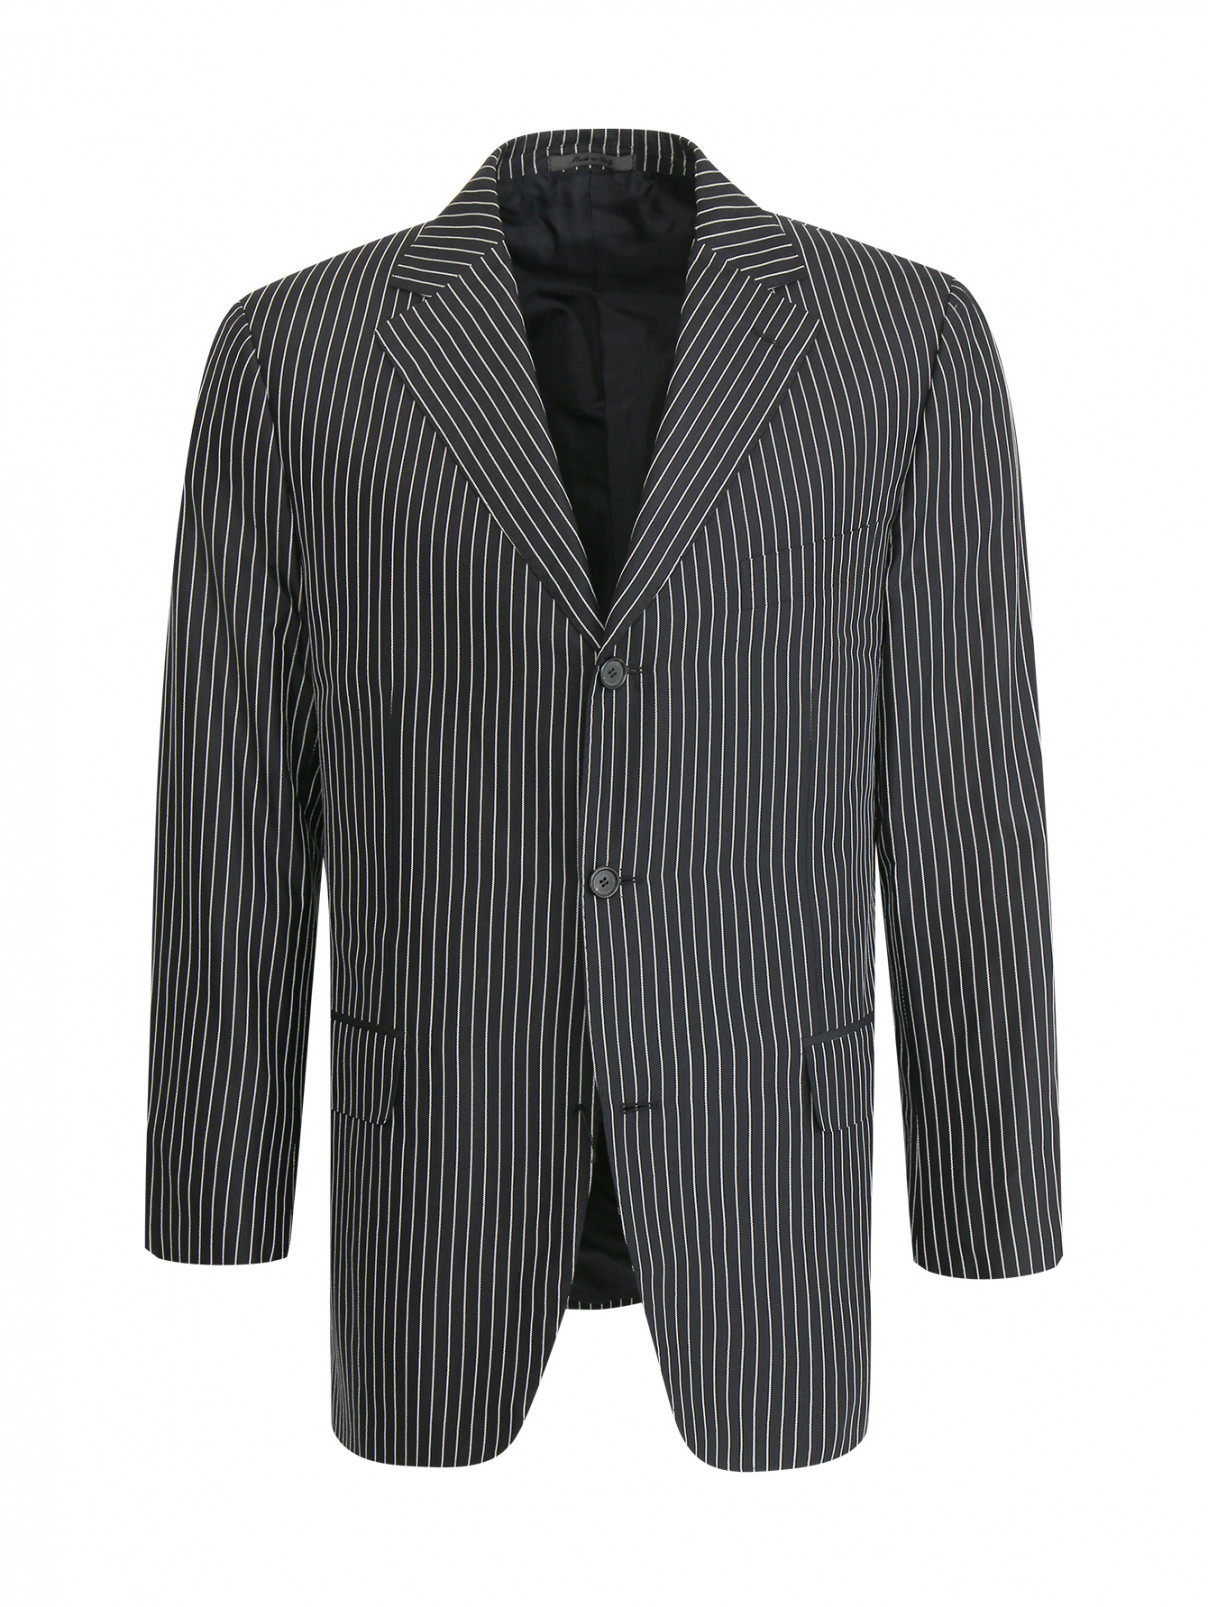 Пиджак из хлопка с узором "полоска" Baldessarini  –  Общий вид  – Цвет:  Черный